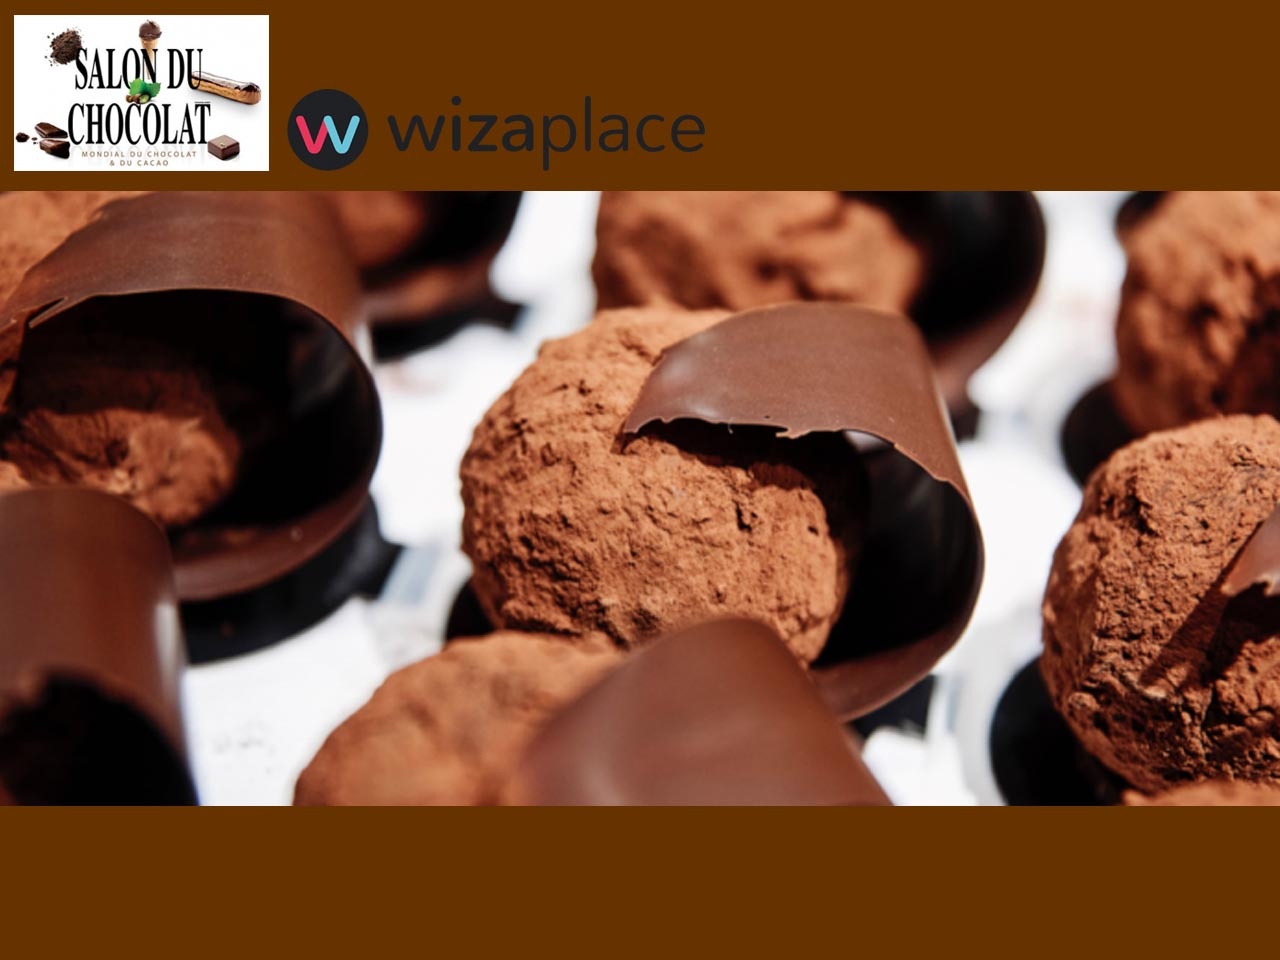 Le Salon du Chocolat se digitalise et lance sa propre marketplace